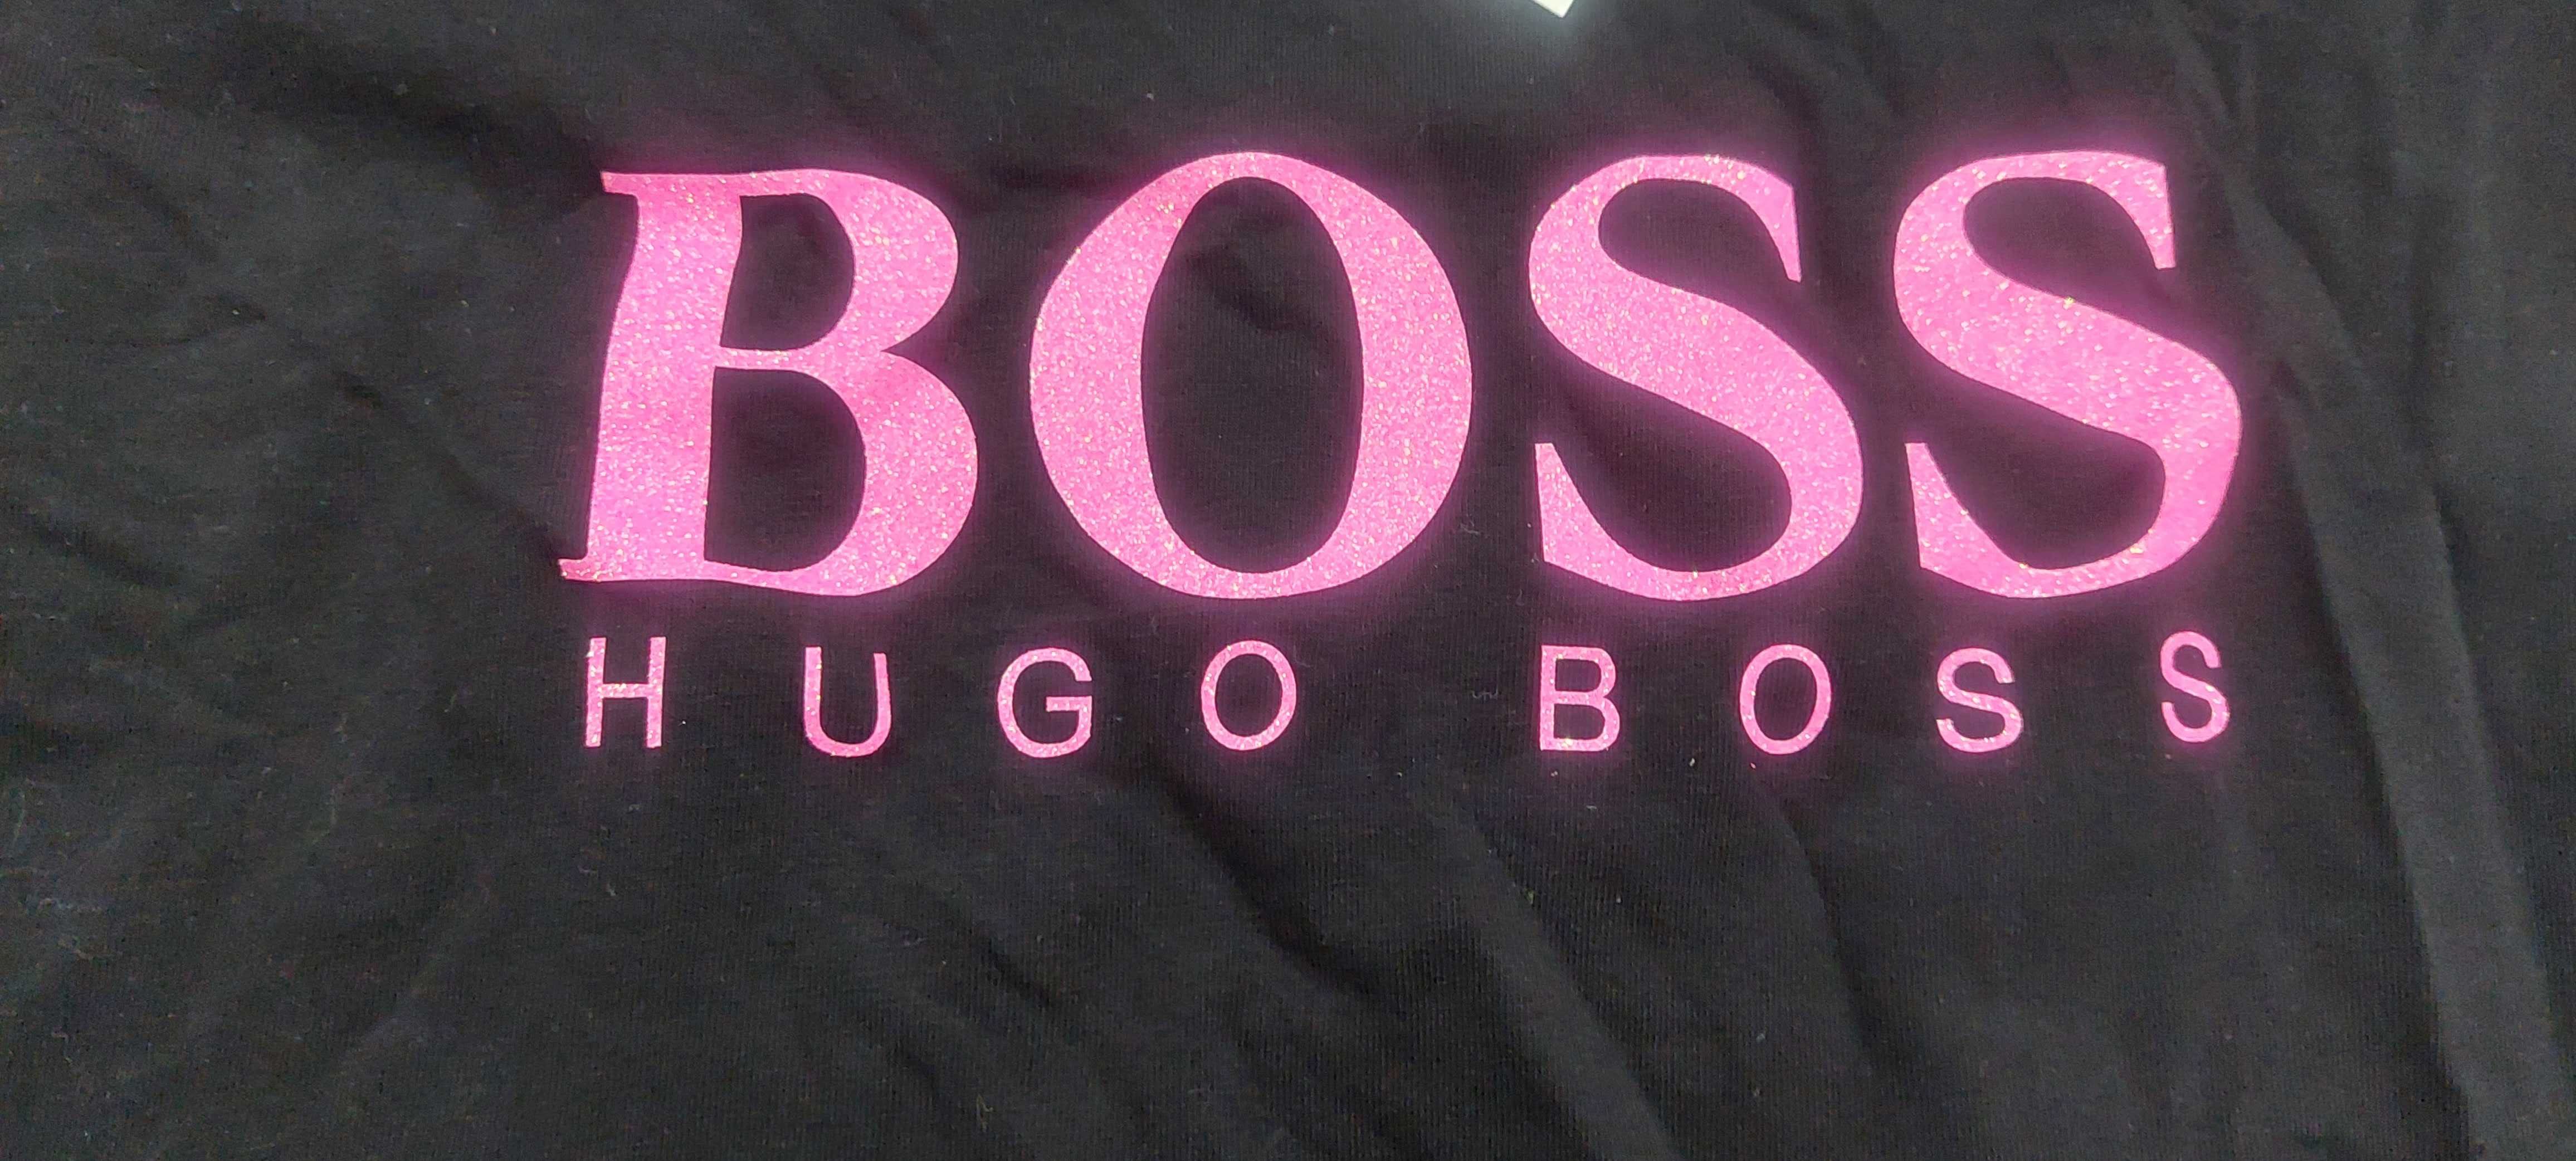 Czarny T shirt Hugo Boss rozm. S nowy